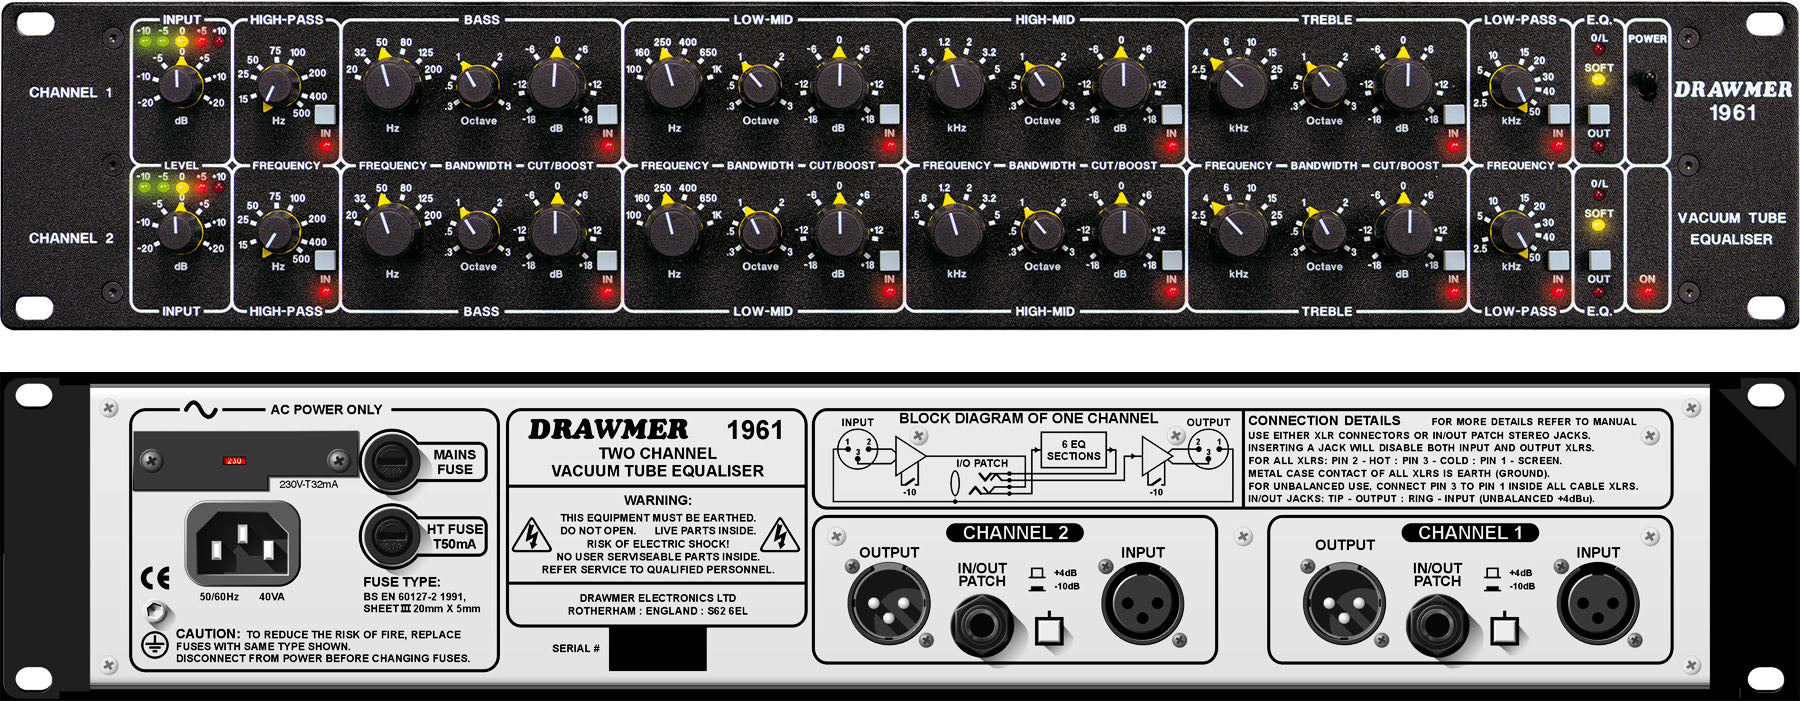 Drawmer 1961 - Vacuum Tube Equaliser - Professional Audio Design